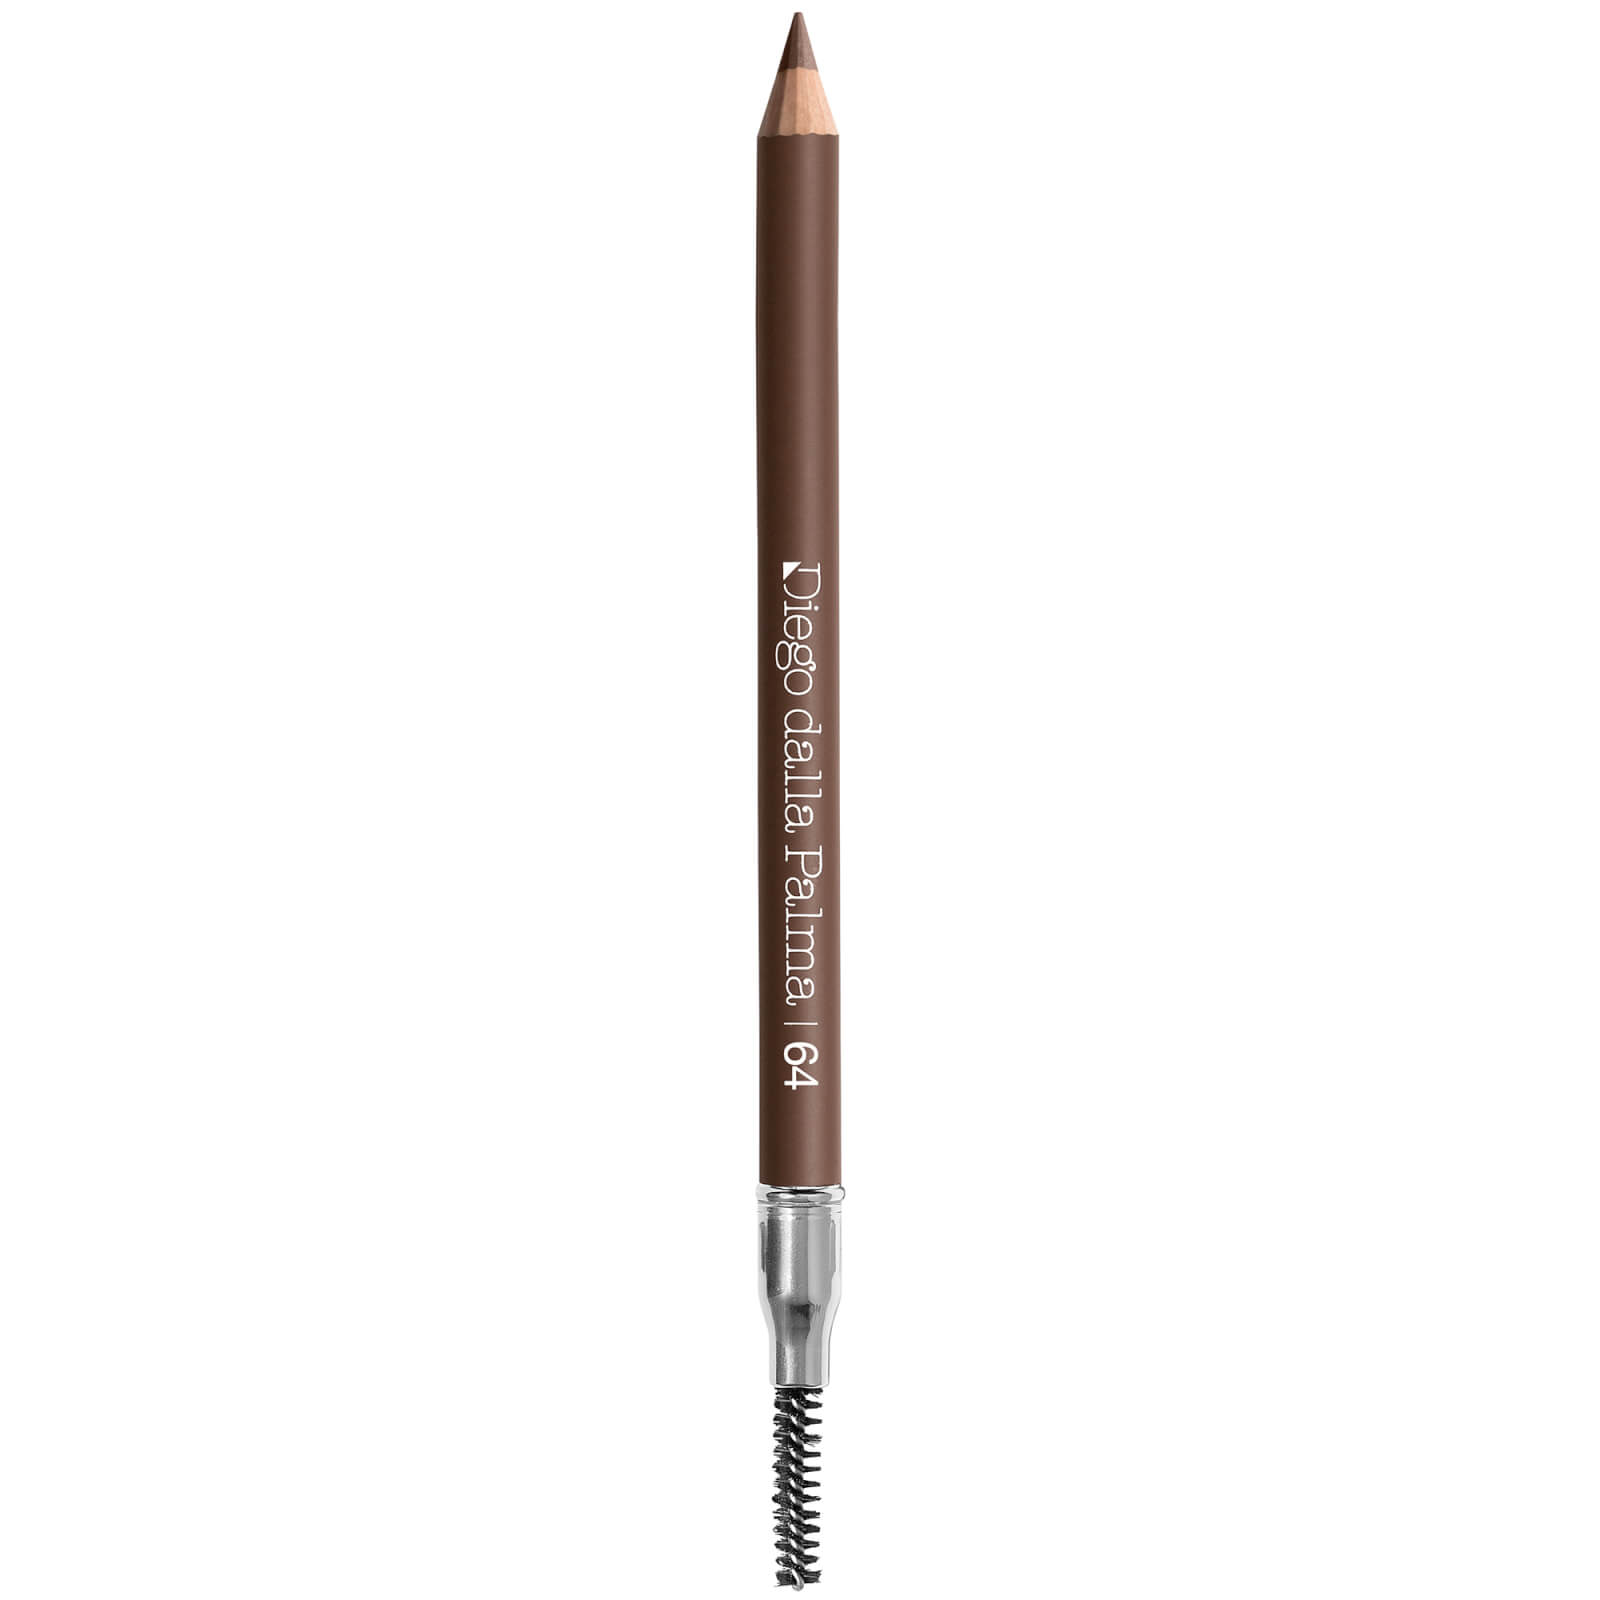 Diego Dalla Palma Eyebrow Powder Pencil 1.2g (various Shades) - 64